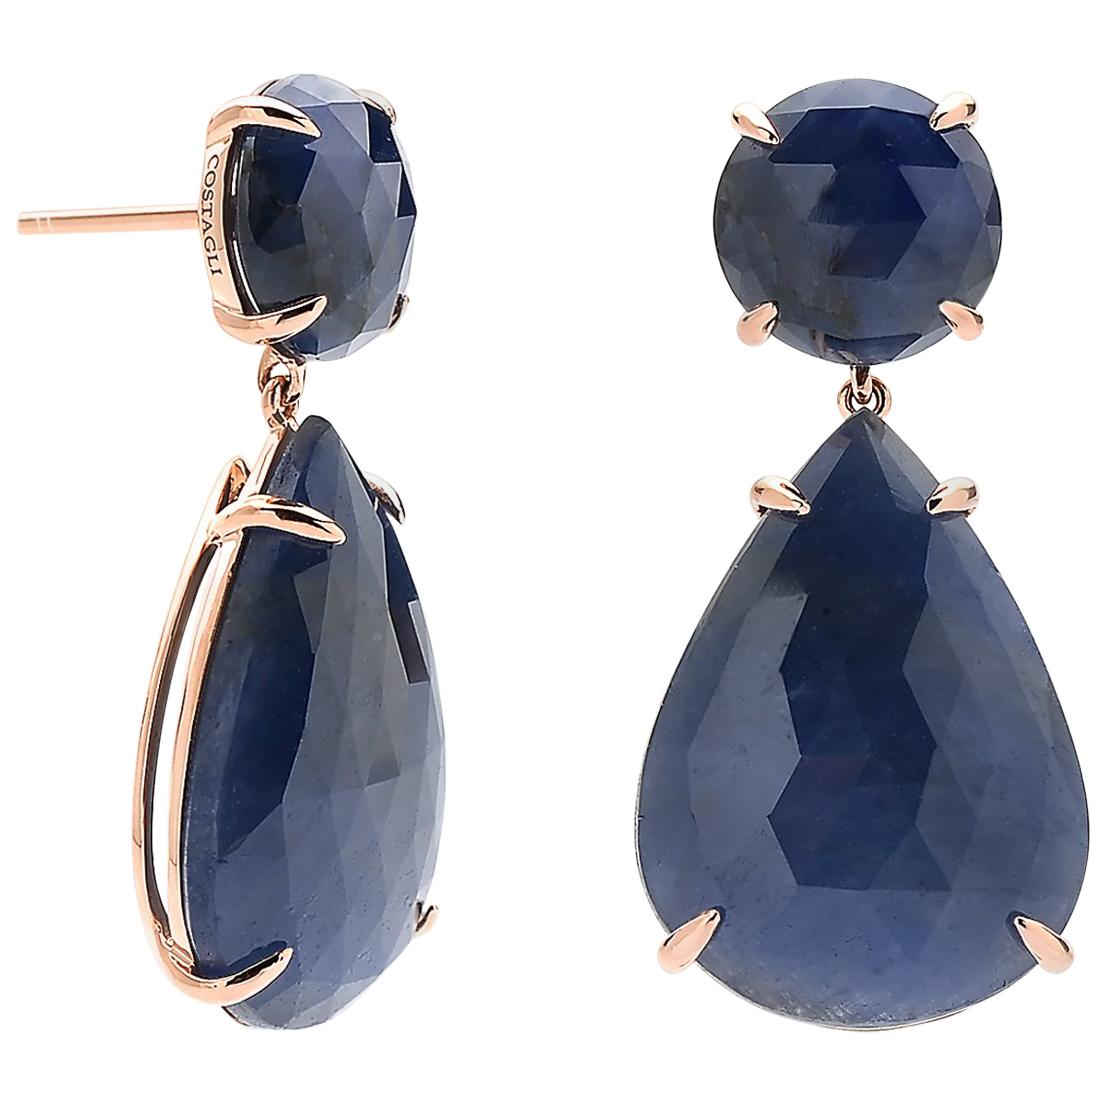 Paolo Costagli 39. 57 Carat Blue Sapphire Earrings Set in 18 Karat Rose Gold